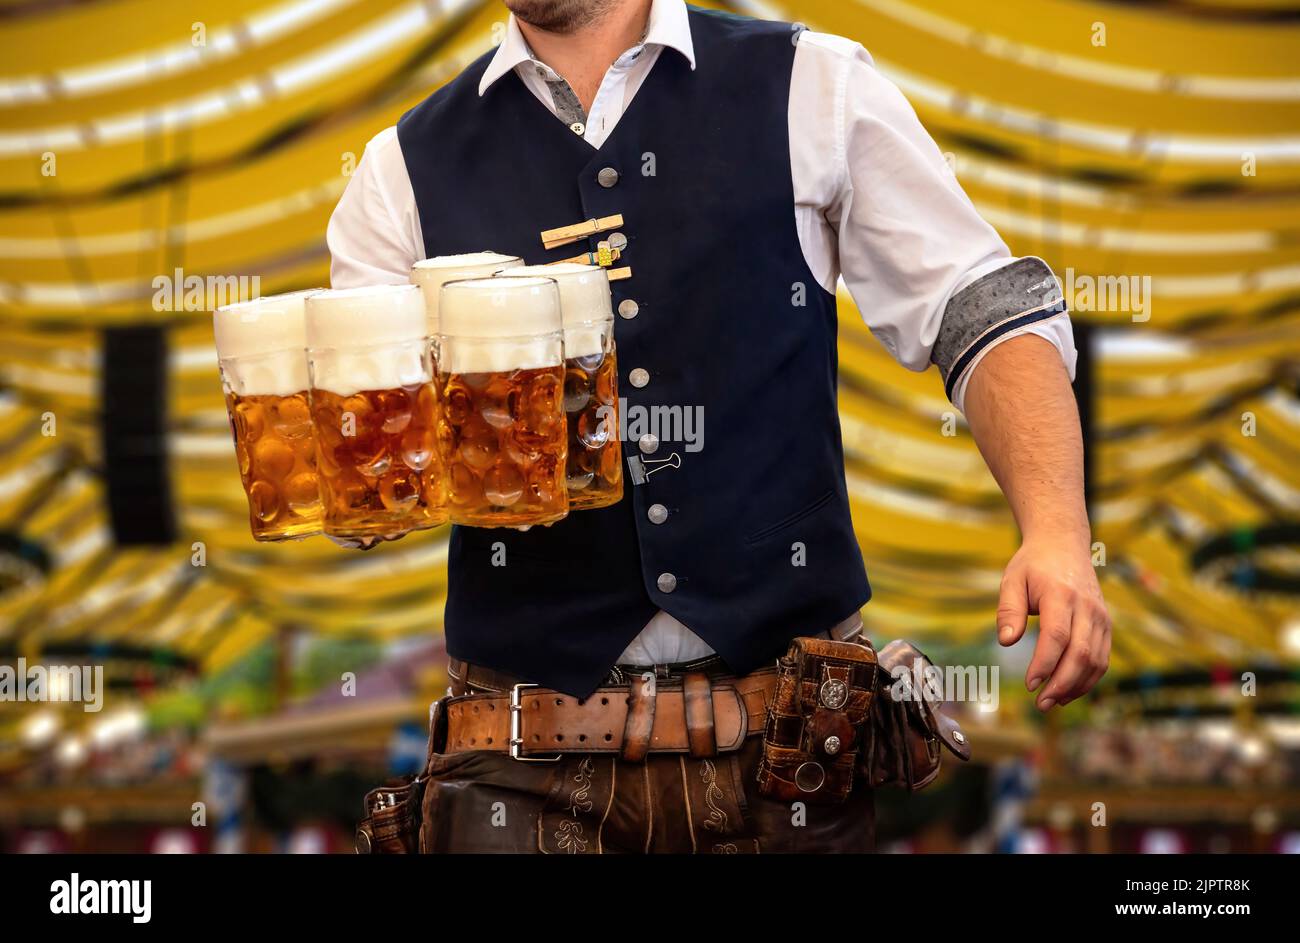 Oktoberfest, München. Kellner in traditioneller bayerischer Tracht serviert Bier, Nahaufnahme. Oktober Fest Deutsches Bierfest. Stockfoto